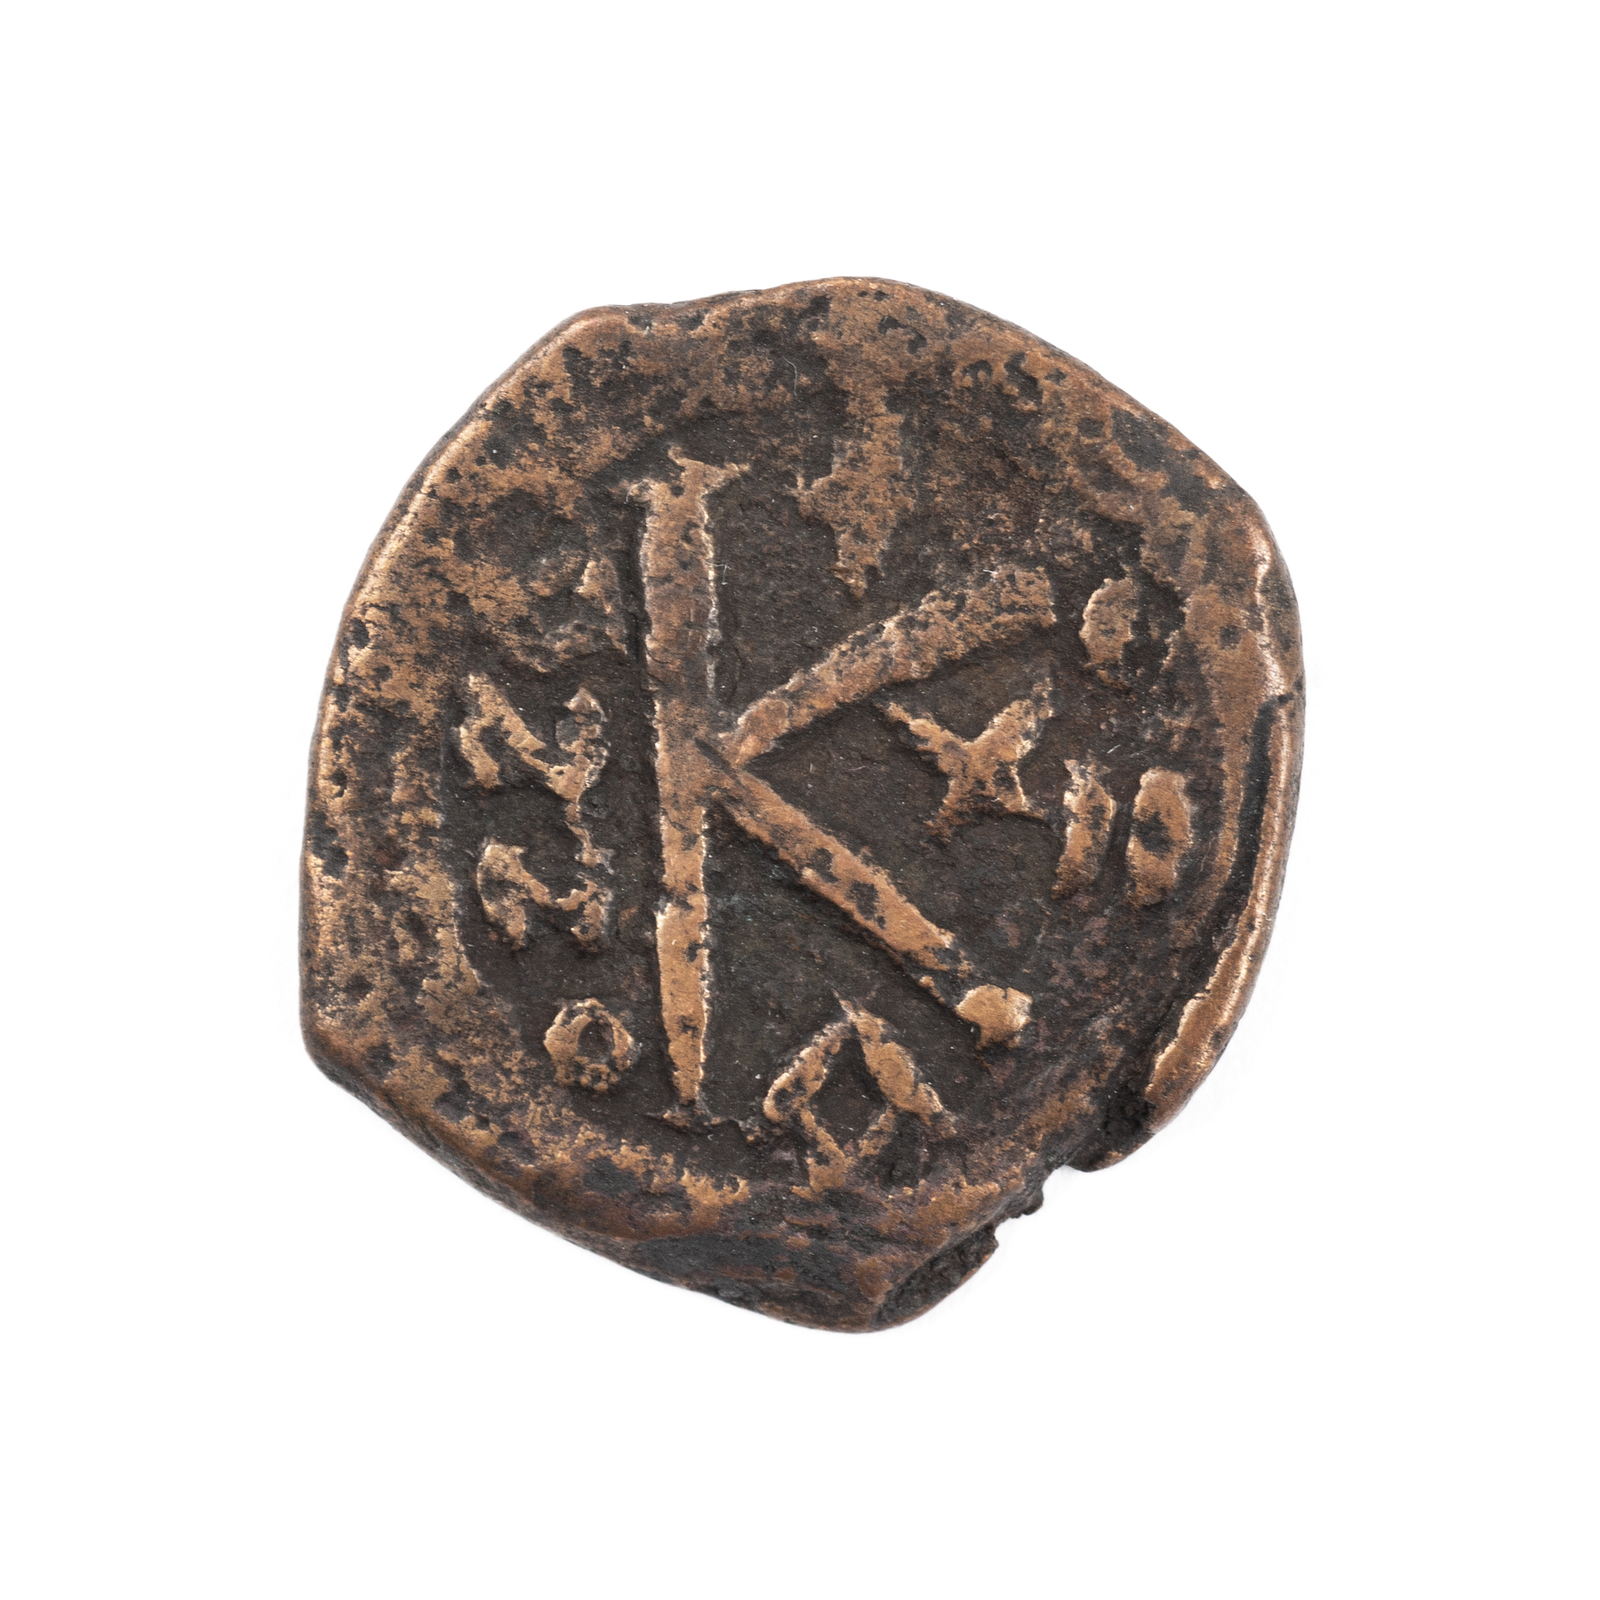 Bysantinskt mynt påträffat i Skellefteå i förflyttad matjord. Foto Krister Hägglund, Skellefteå museum. SM 27066__A och SM 27066__B.